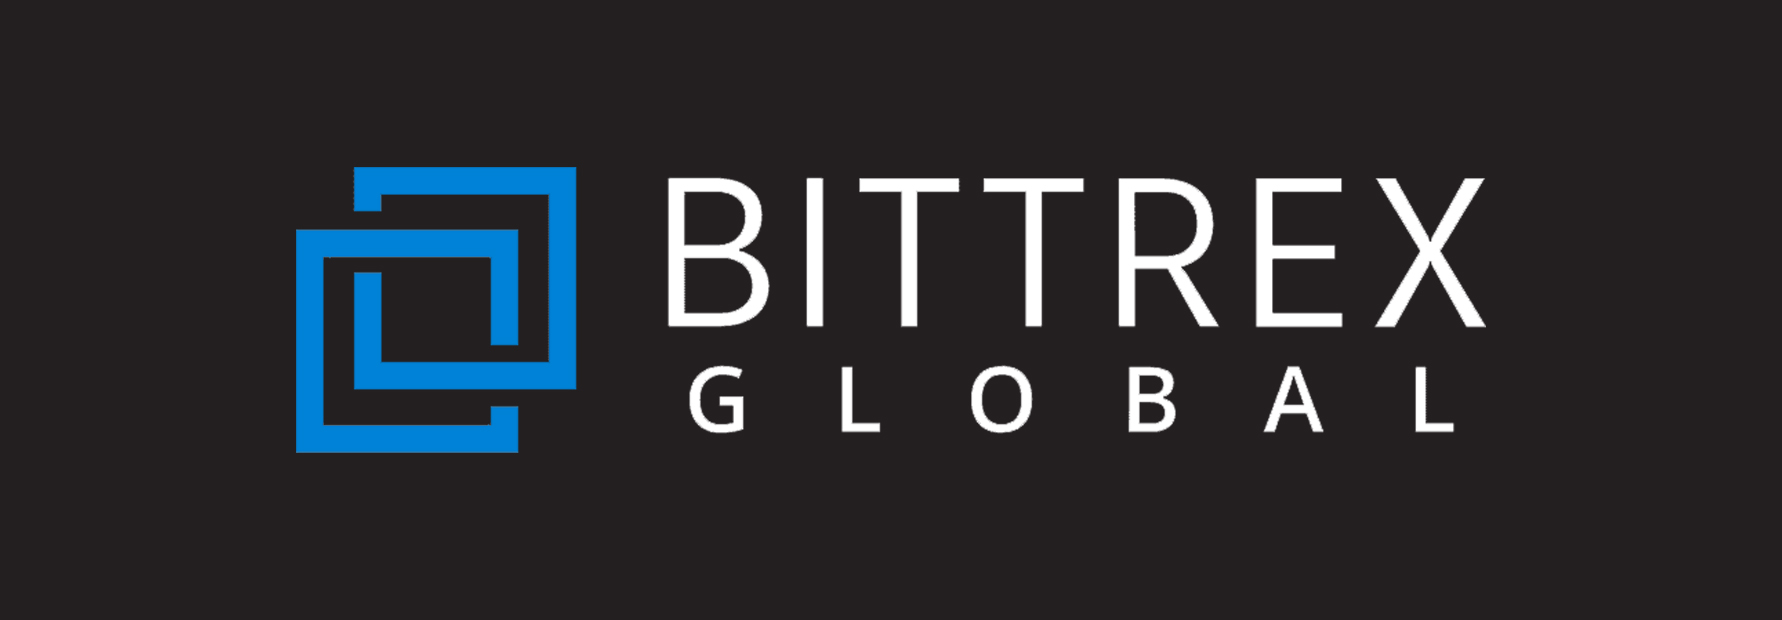 bittrex_global-logo.jpg